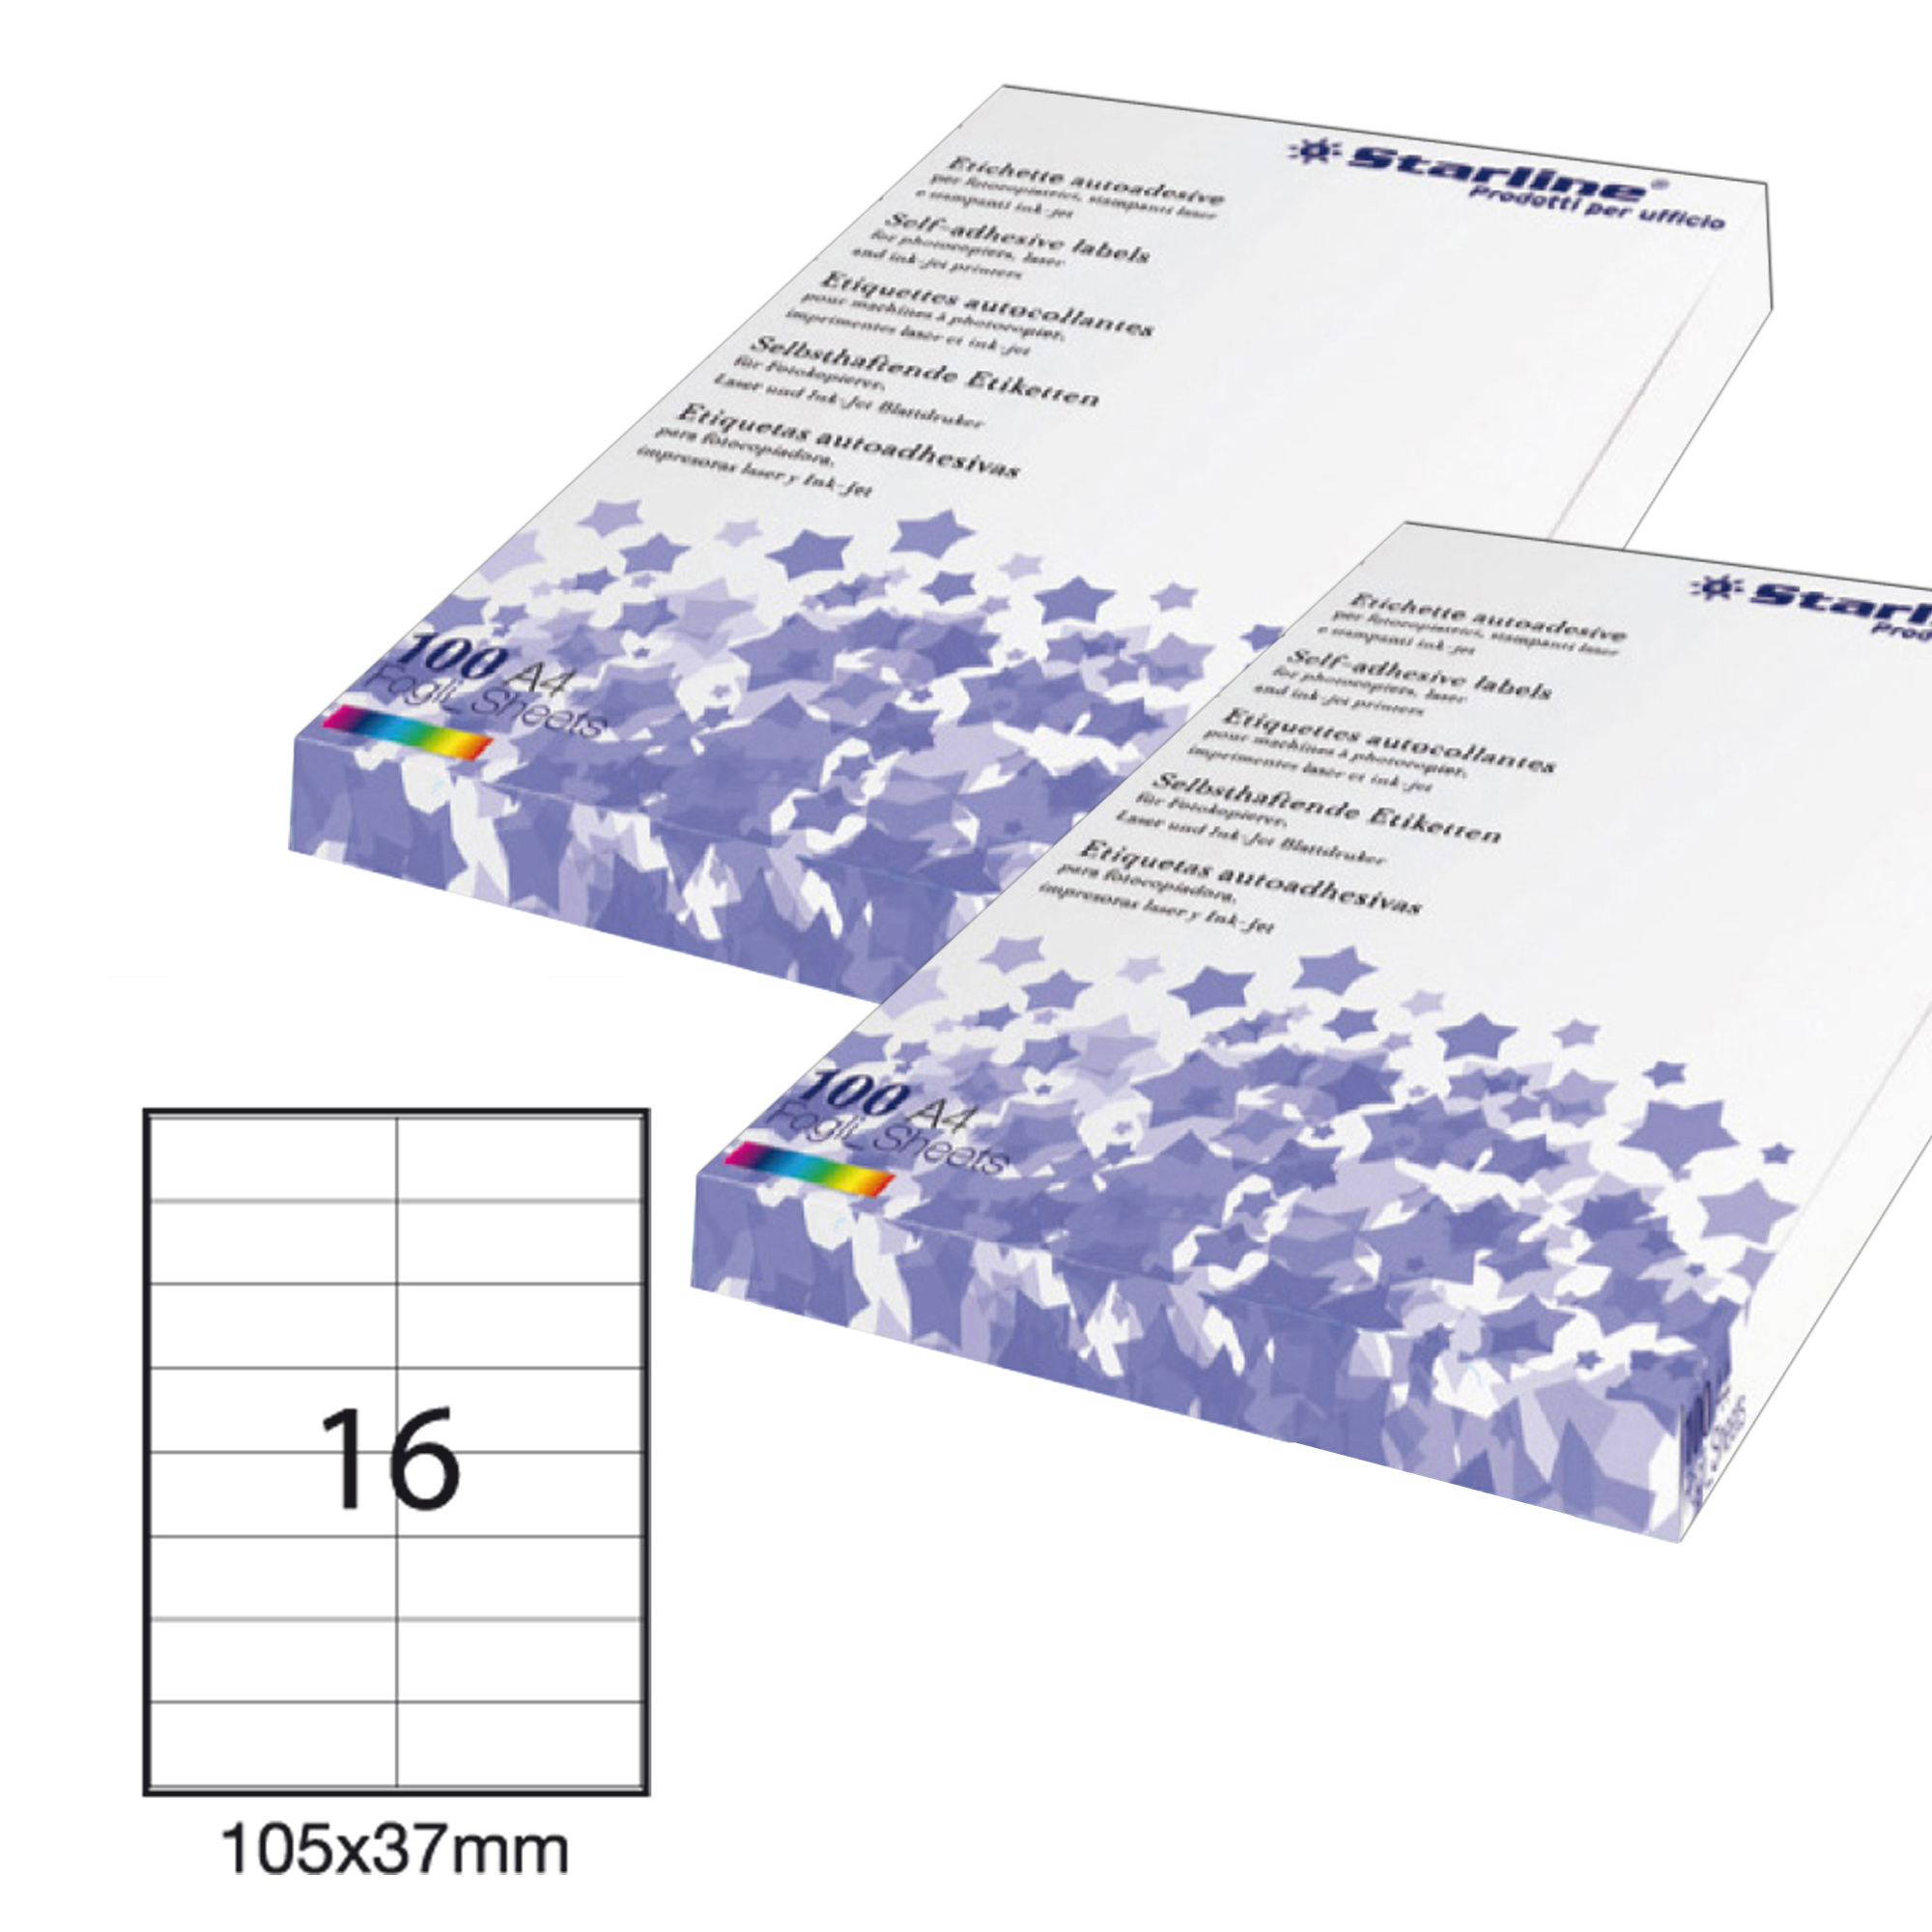 Etichetta adesiva - permanente - 105x37 mm - 16 etichette per foglio - bianco - Starline - conf. 100 fogli A4